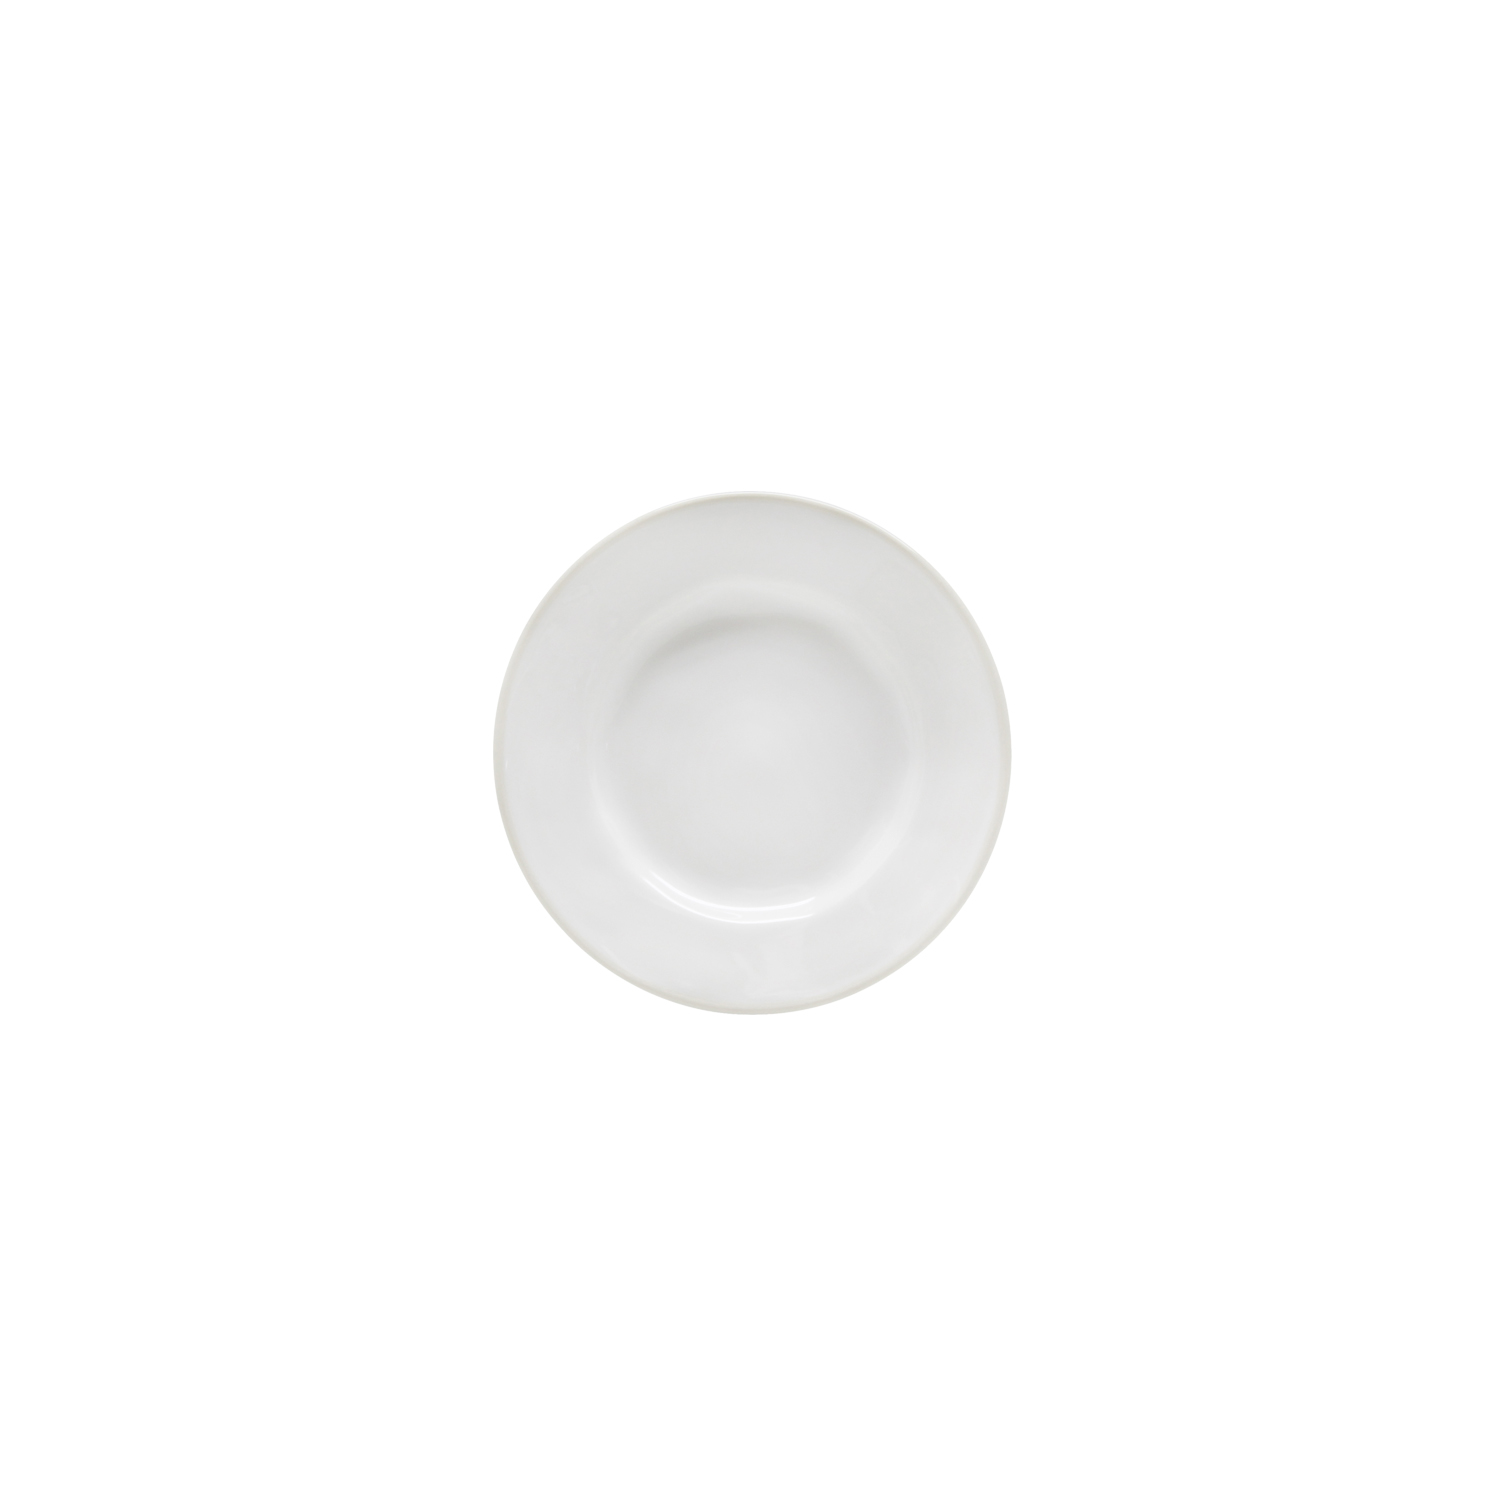 Beja White/cream Bread Plate 15cm Gift